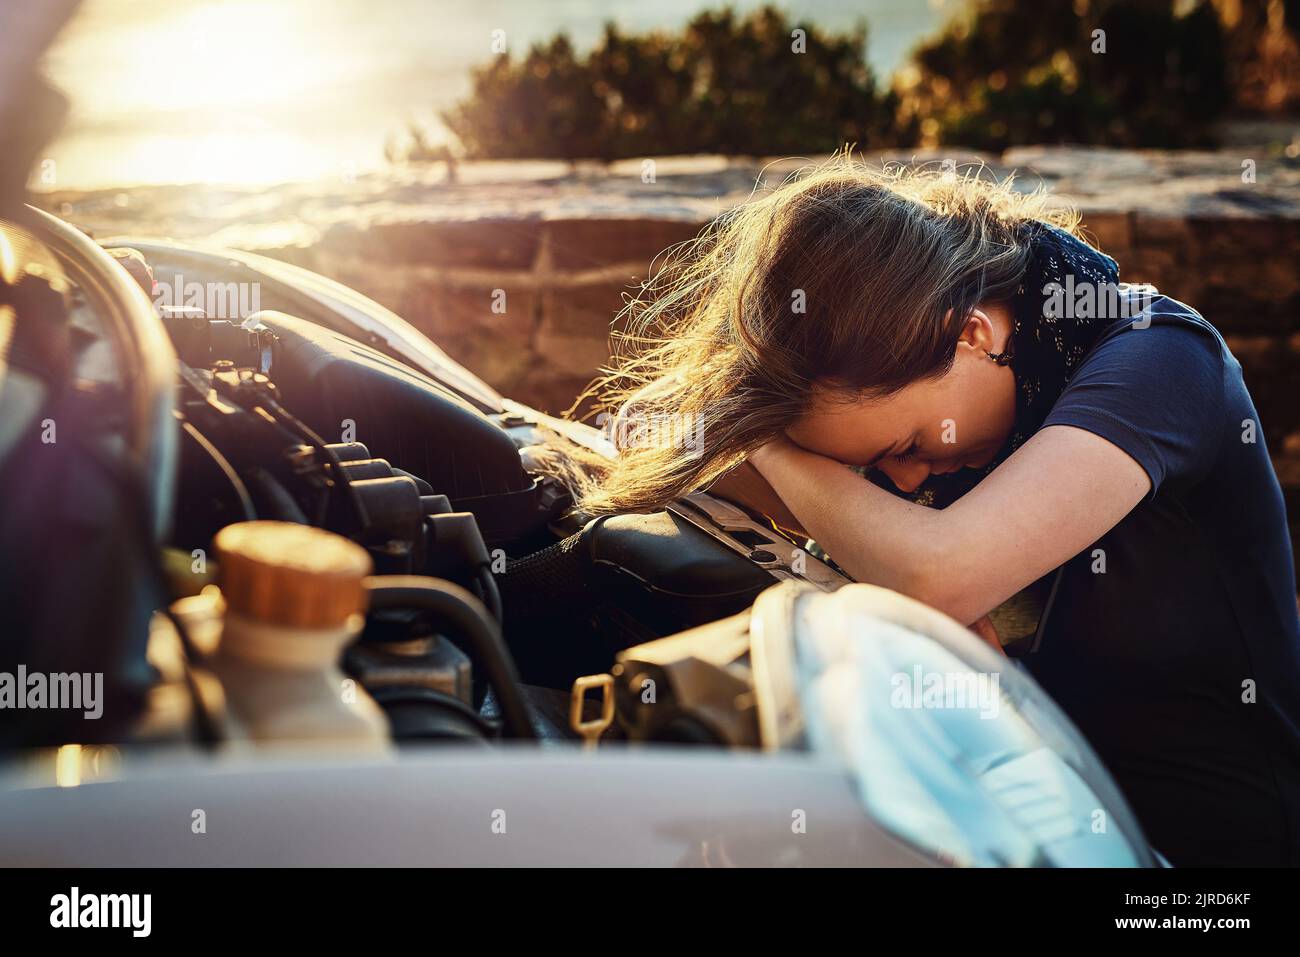 Sowohl sie als auch ihr Auto durchmachen einen Zusammenbruch. Eine junge Frau, die aufgeregt aussieht, nachdem sie am Straßenrand zusammengebrochen ist. Stockfoto